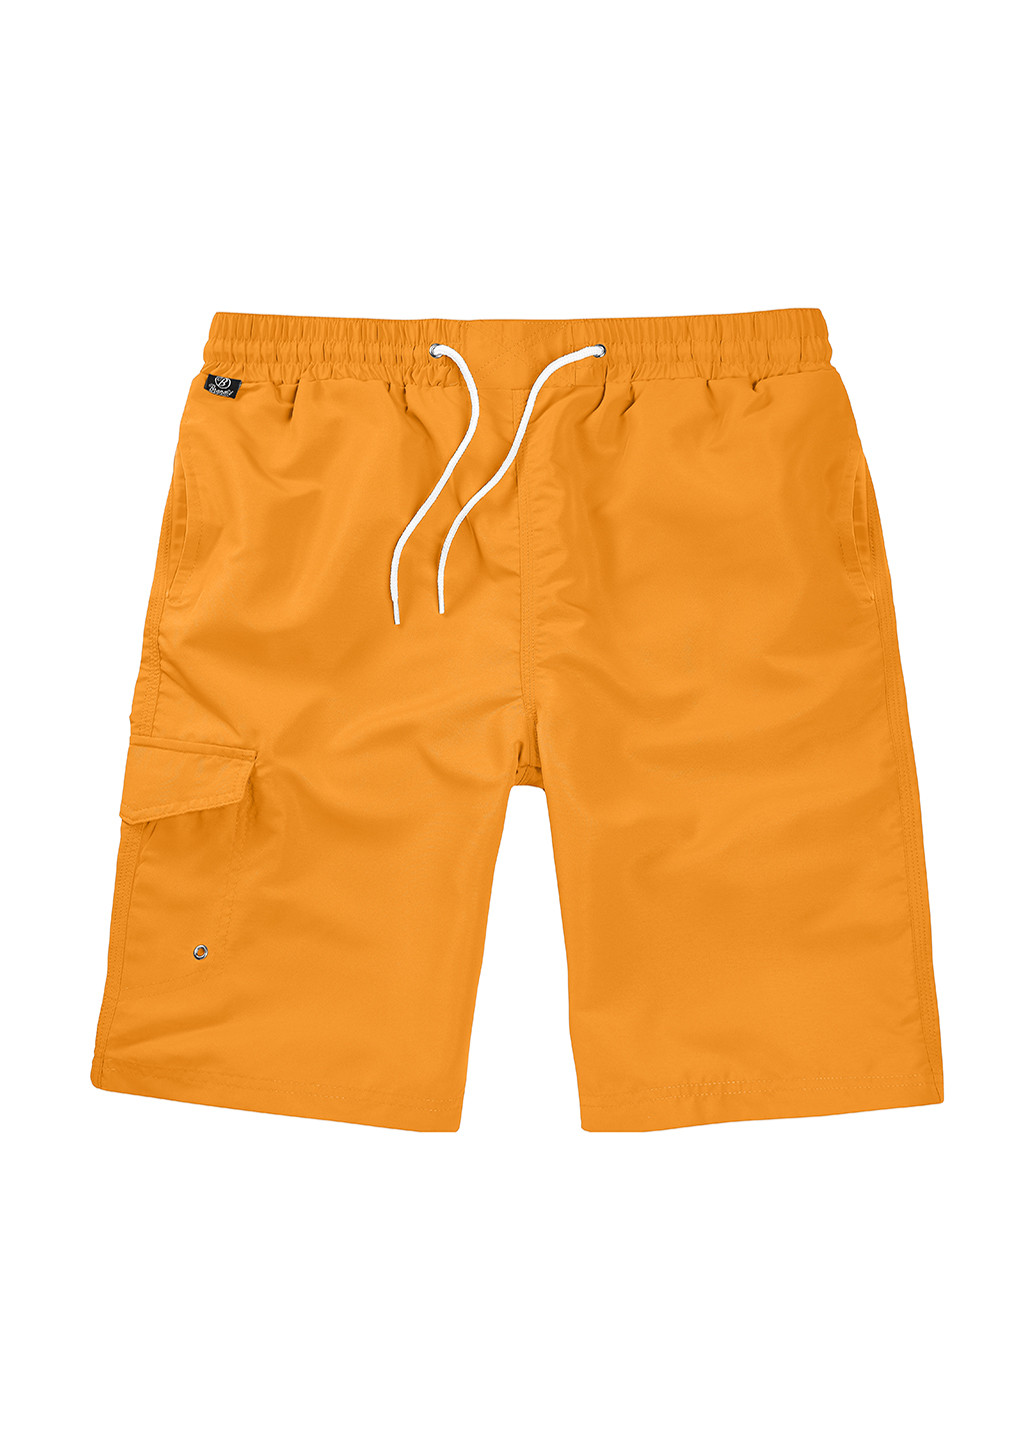 Шорты Brandit оранжевые пляжные